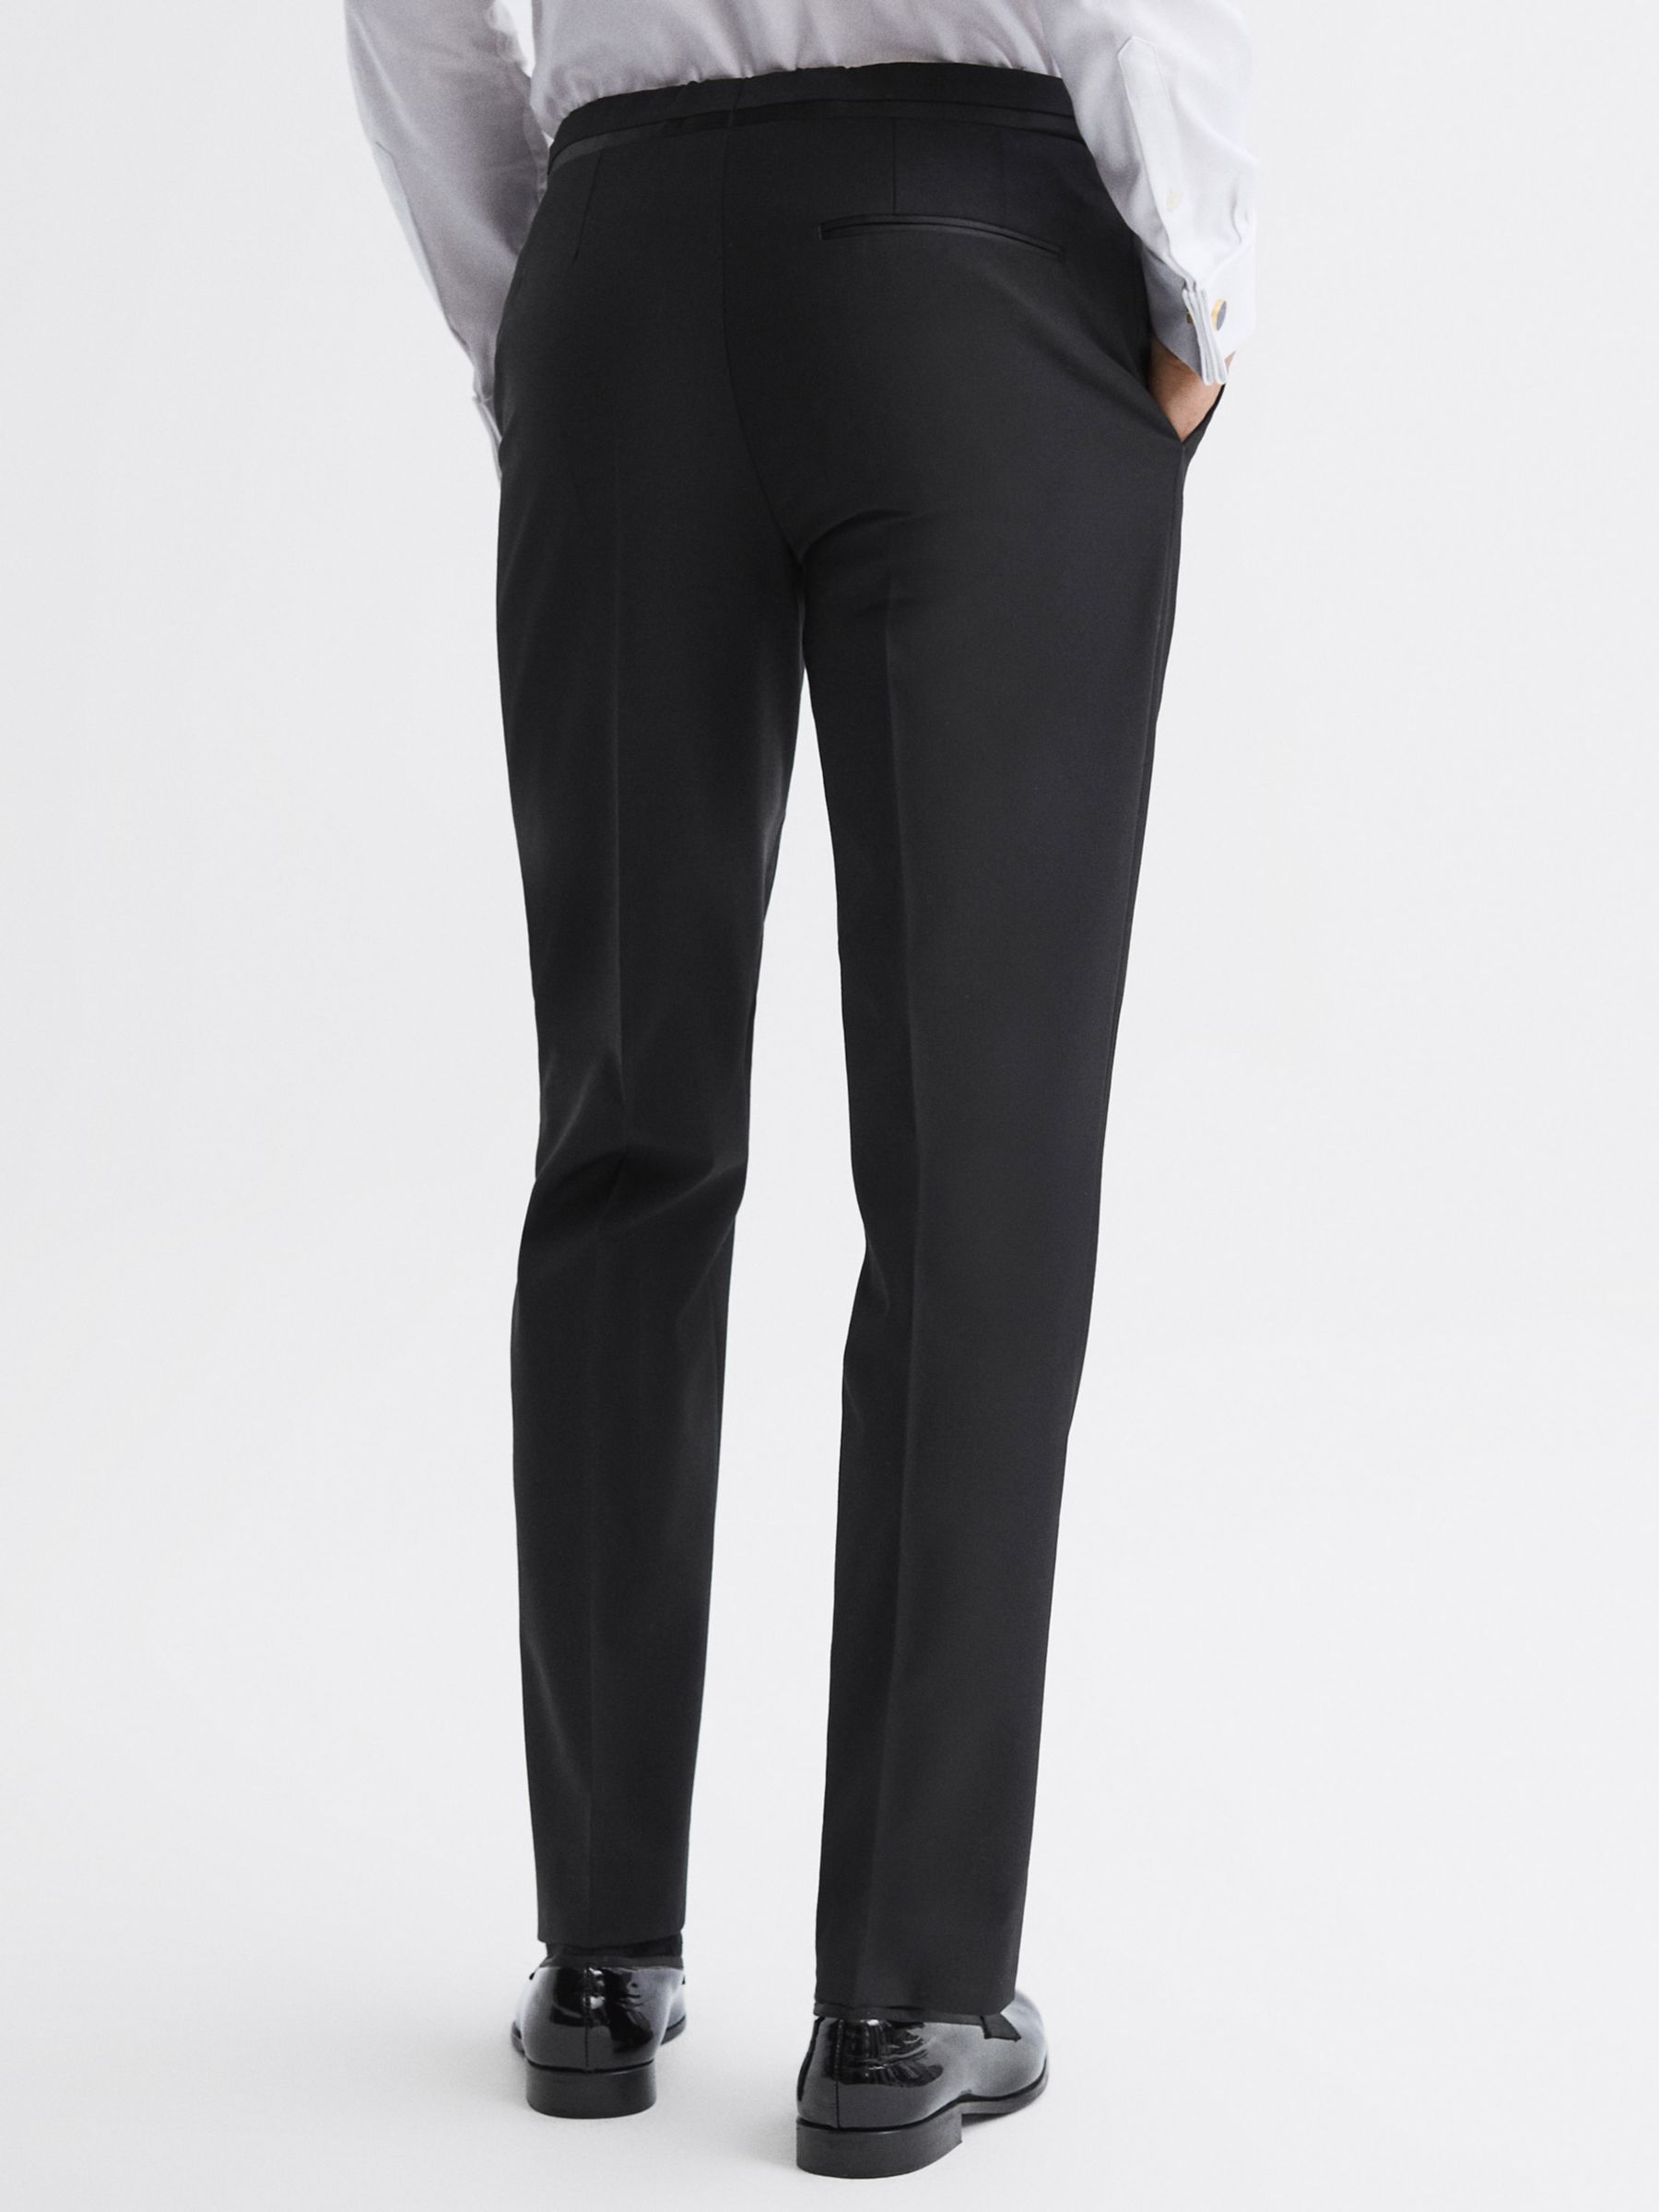 Reiss Poker Wool Blend Suit Trousers, Black, 36R